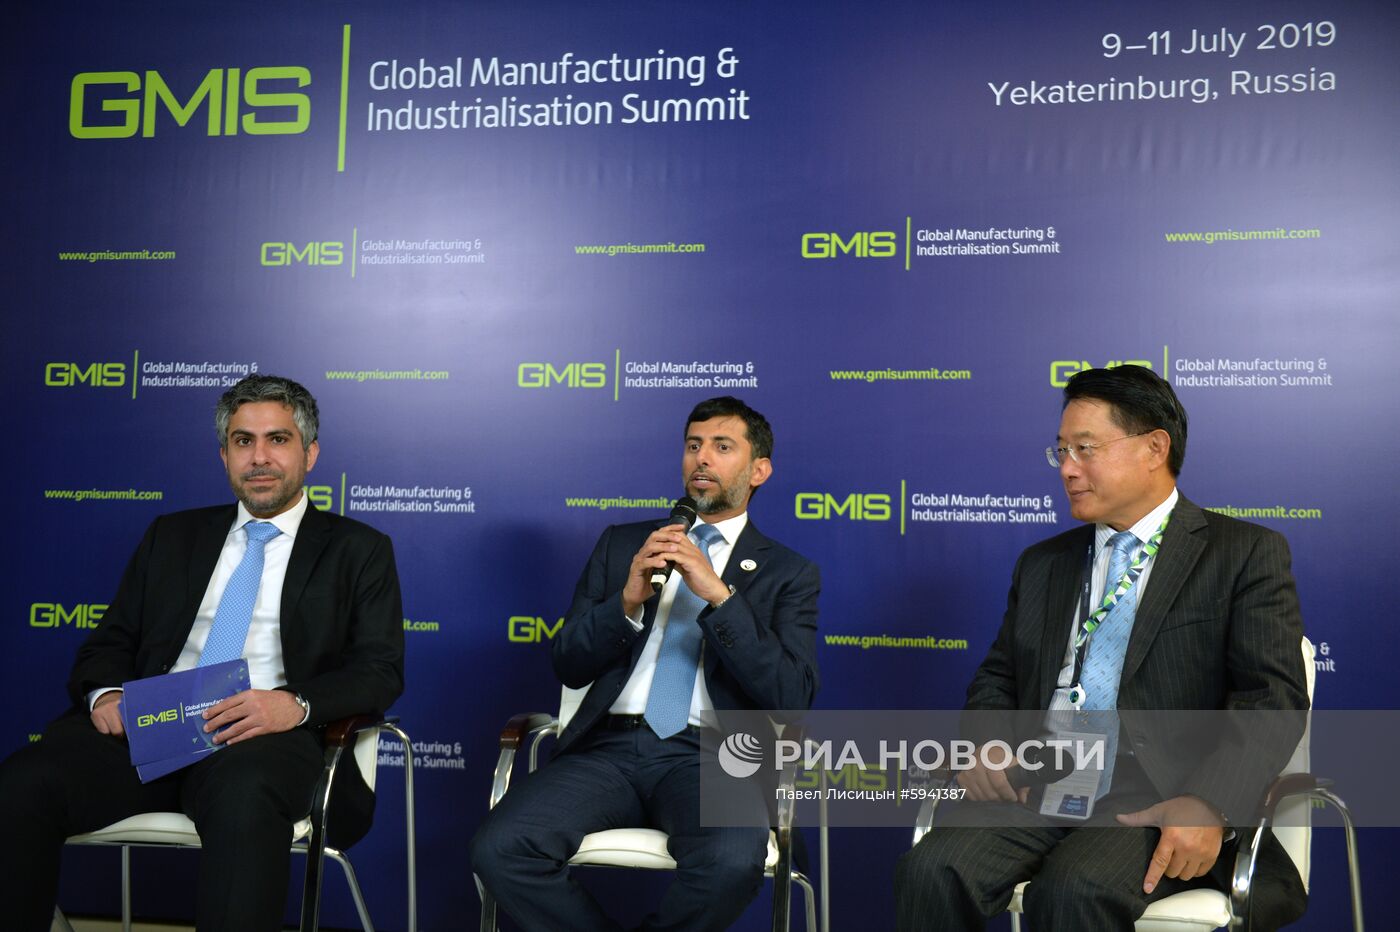 Глобальный саммит по производству и индустриализации GMIS